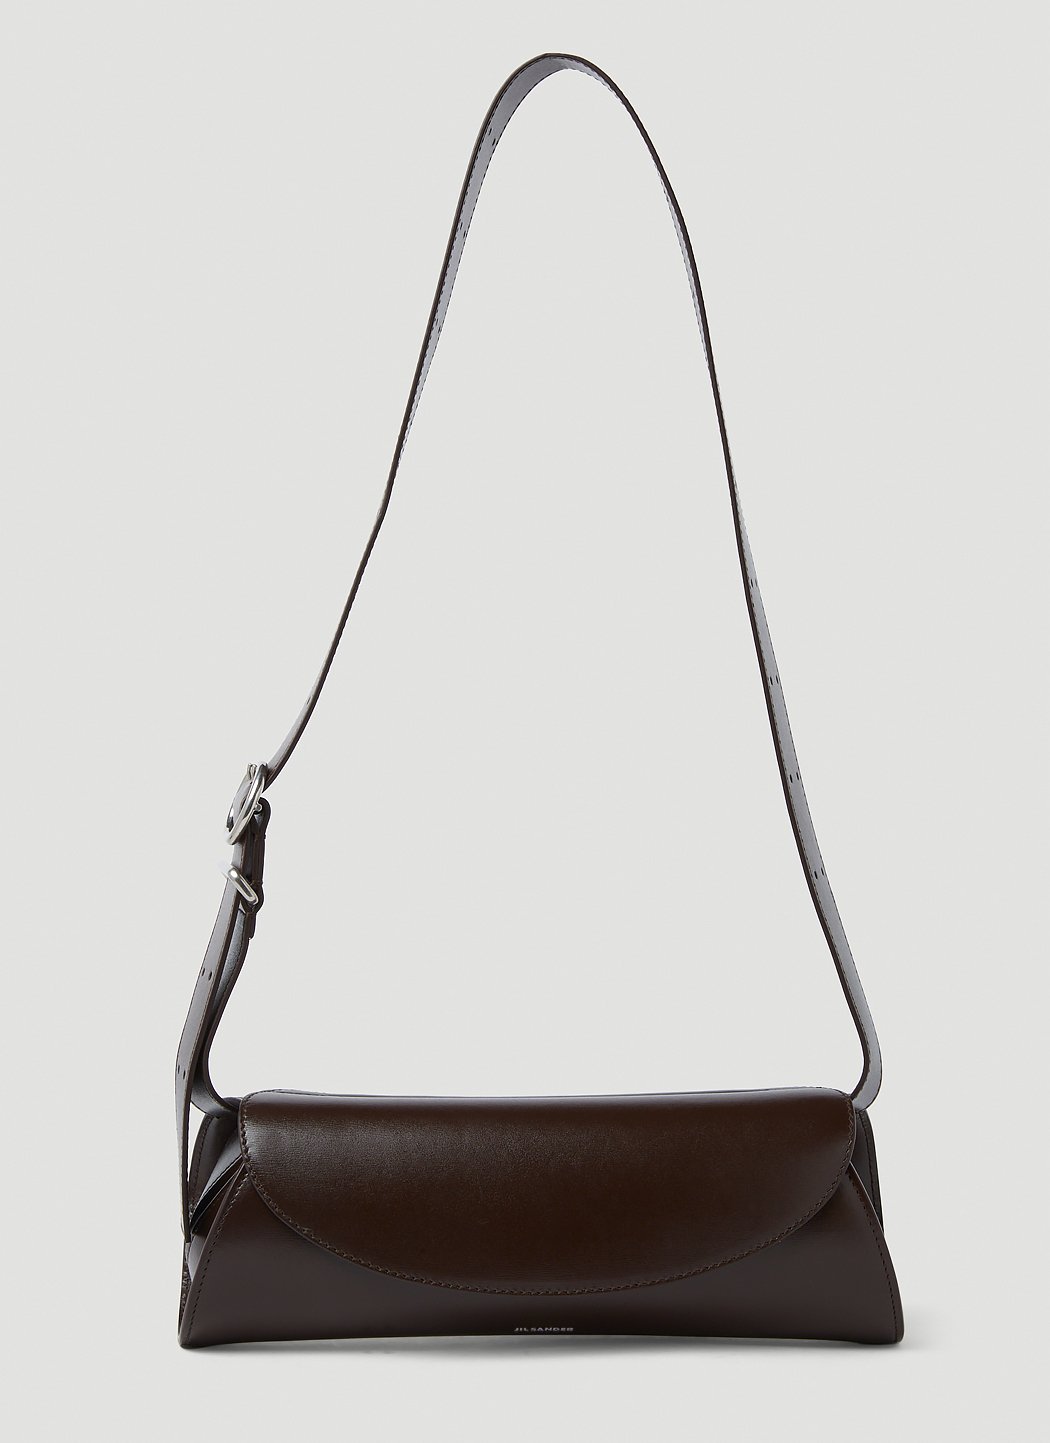 Nocturne Louis Vuitton Handbags for Women - Vestiaire Collective